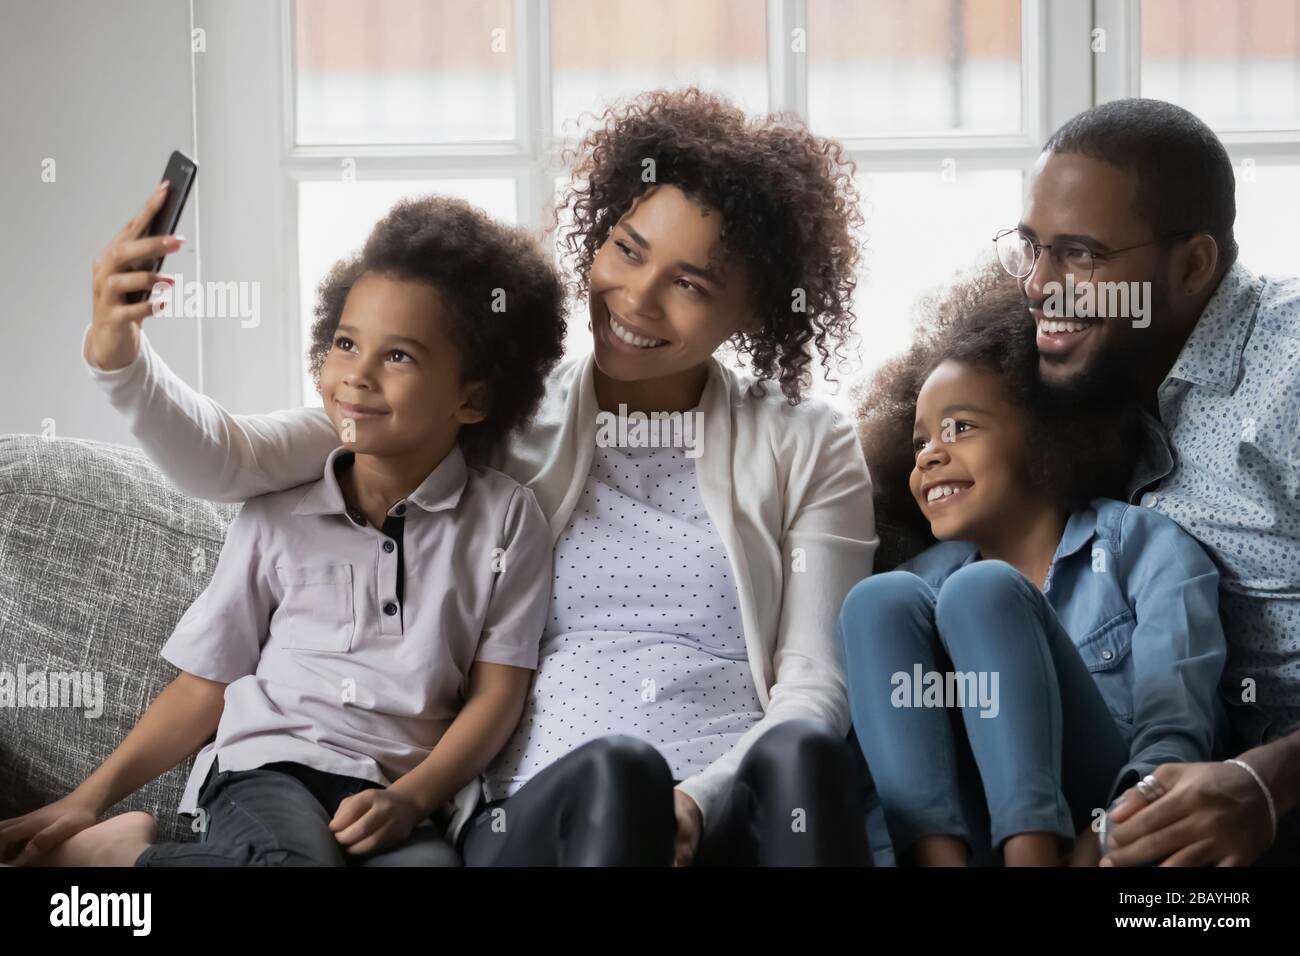 Famille ethnique africaine avec des enfants prenant une photo égoïste à l'aide d'un smartphone Banque D'Images